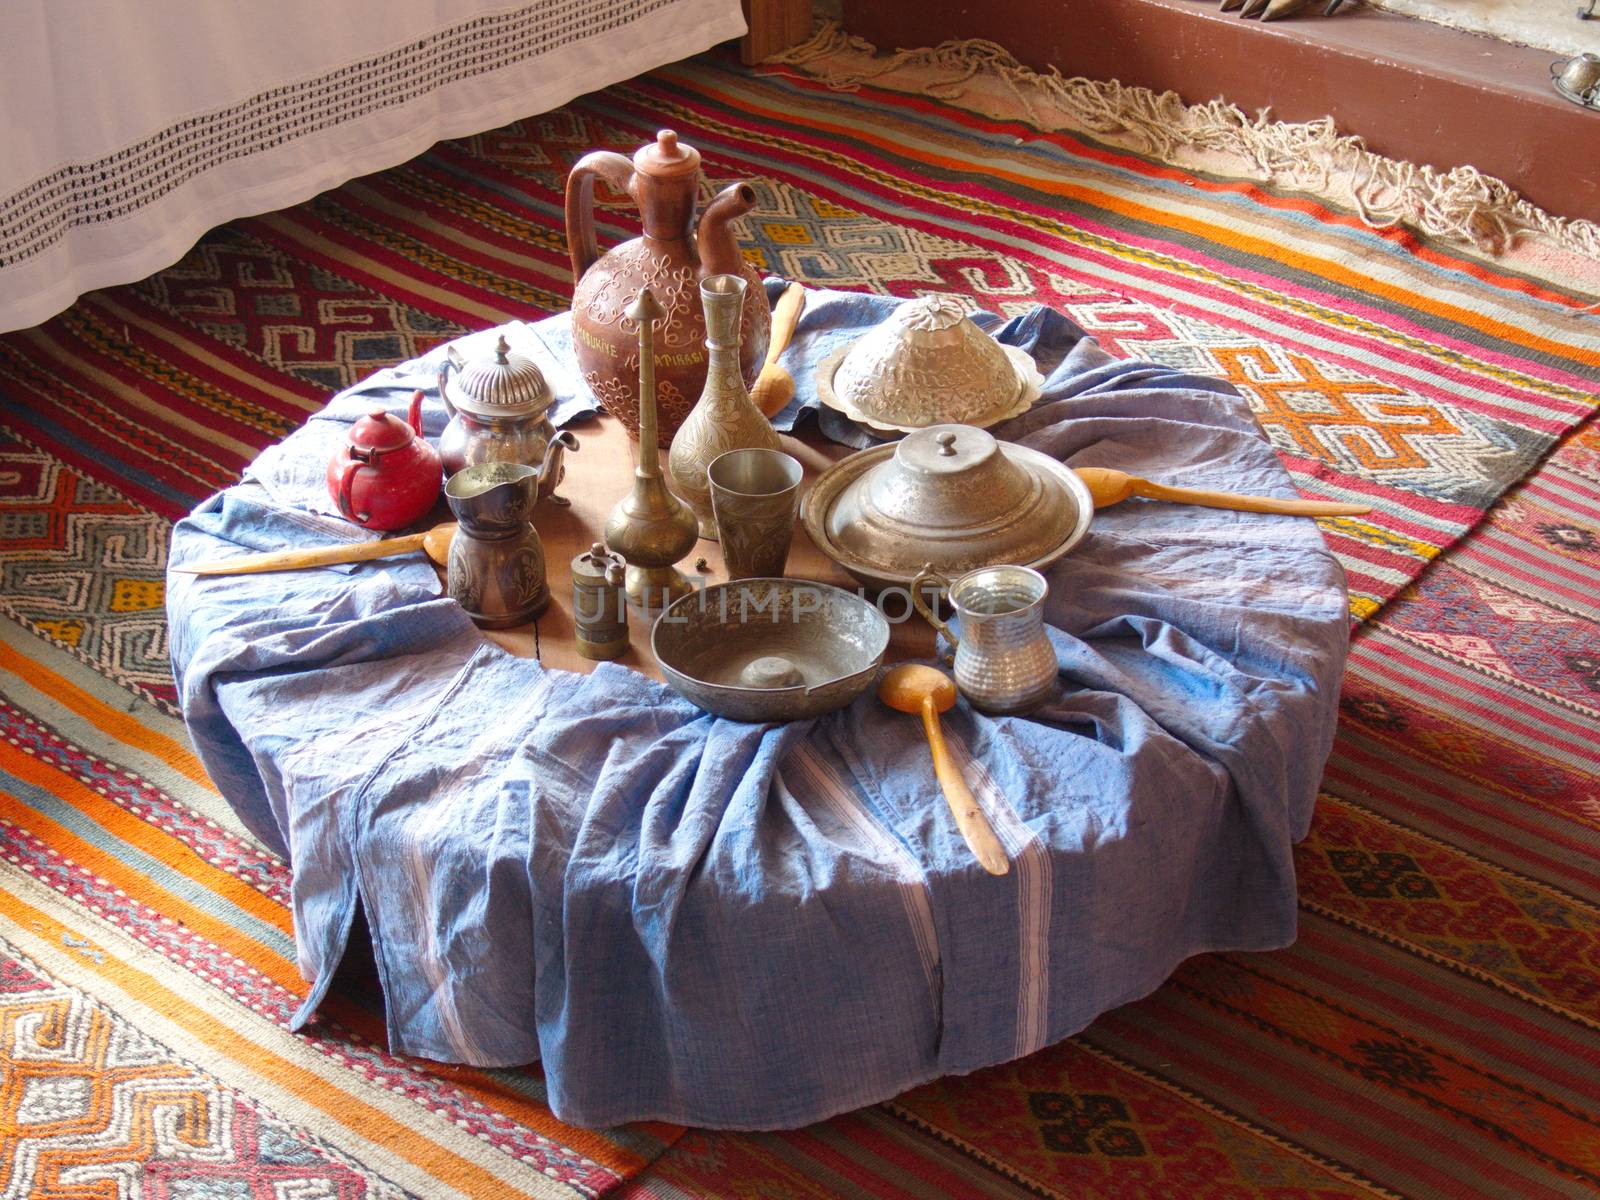 old turkish ottoman dinner table. historic kitchen utensils